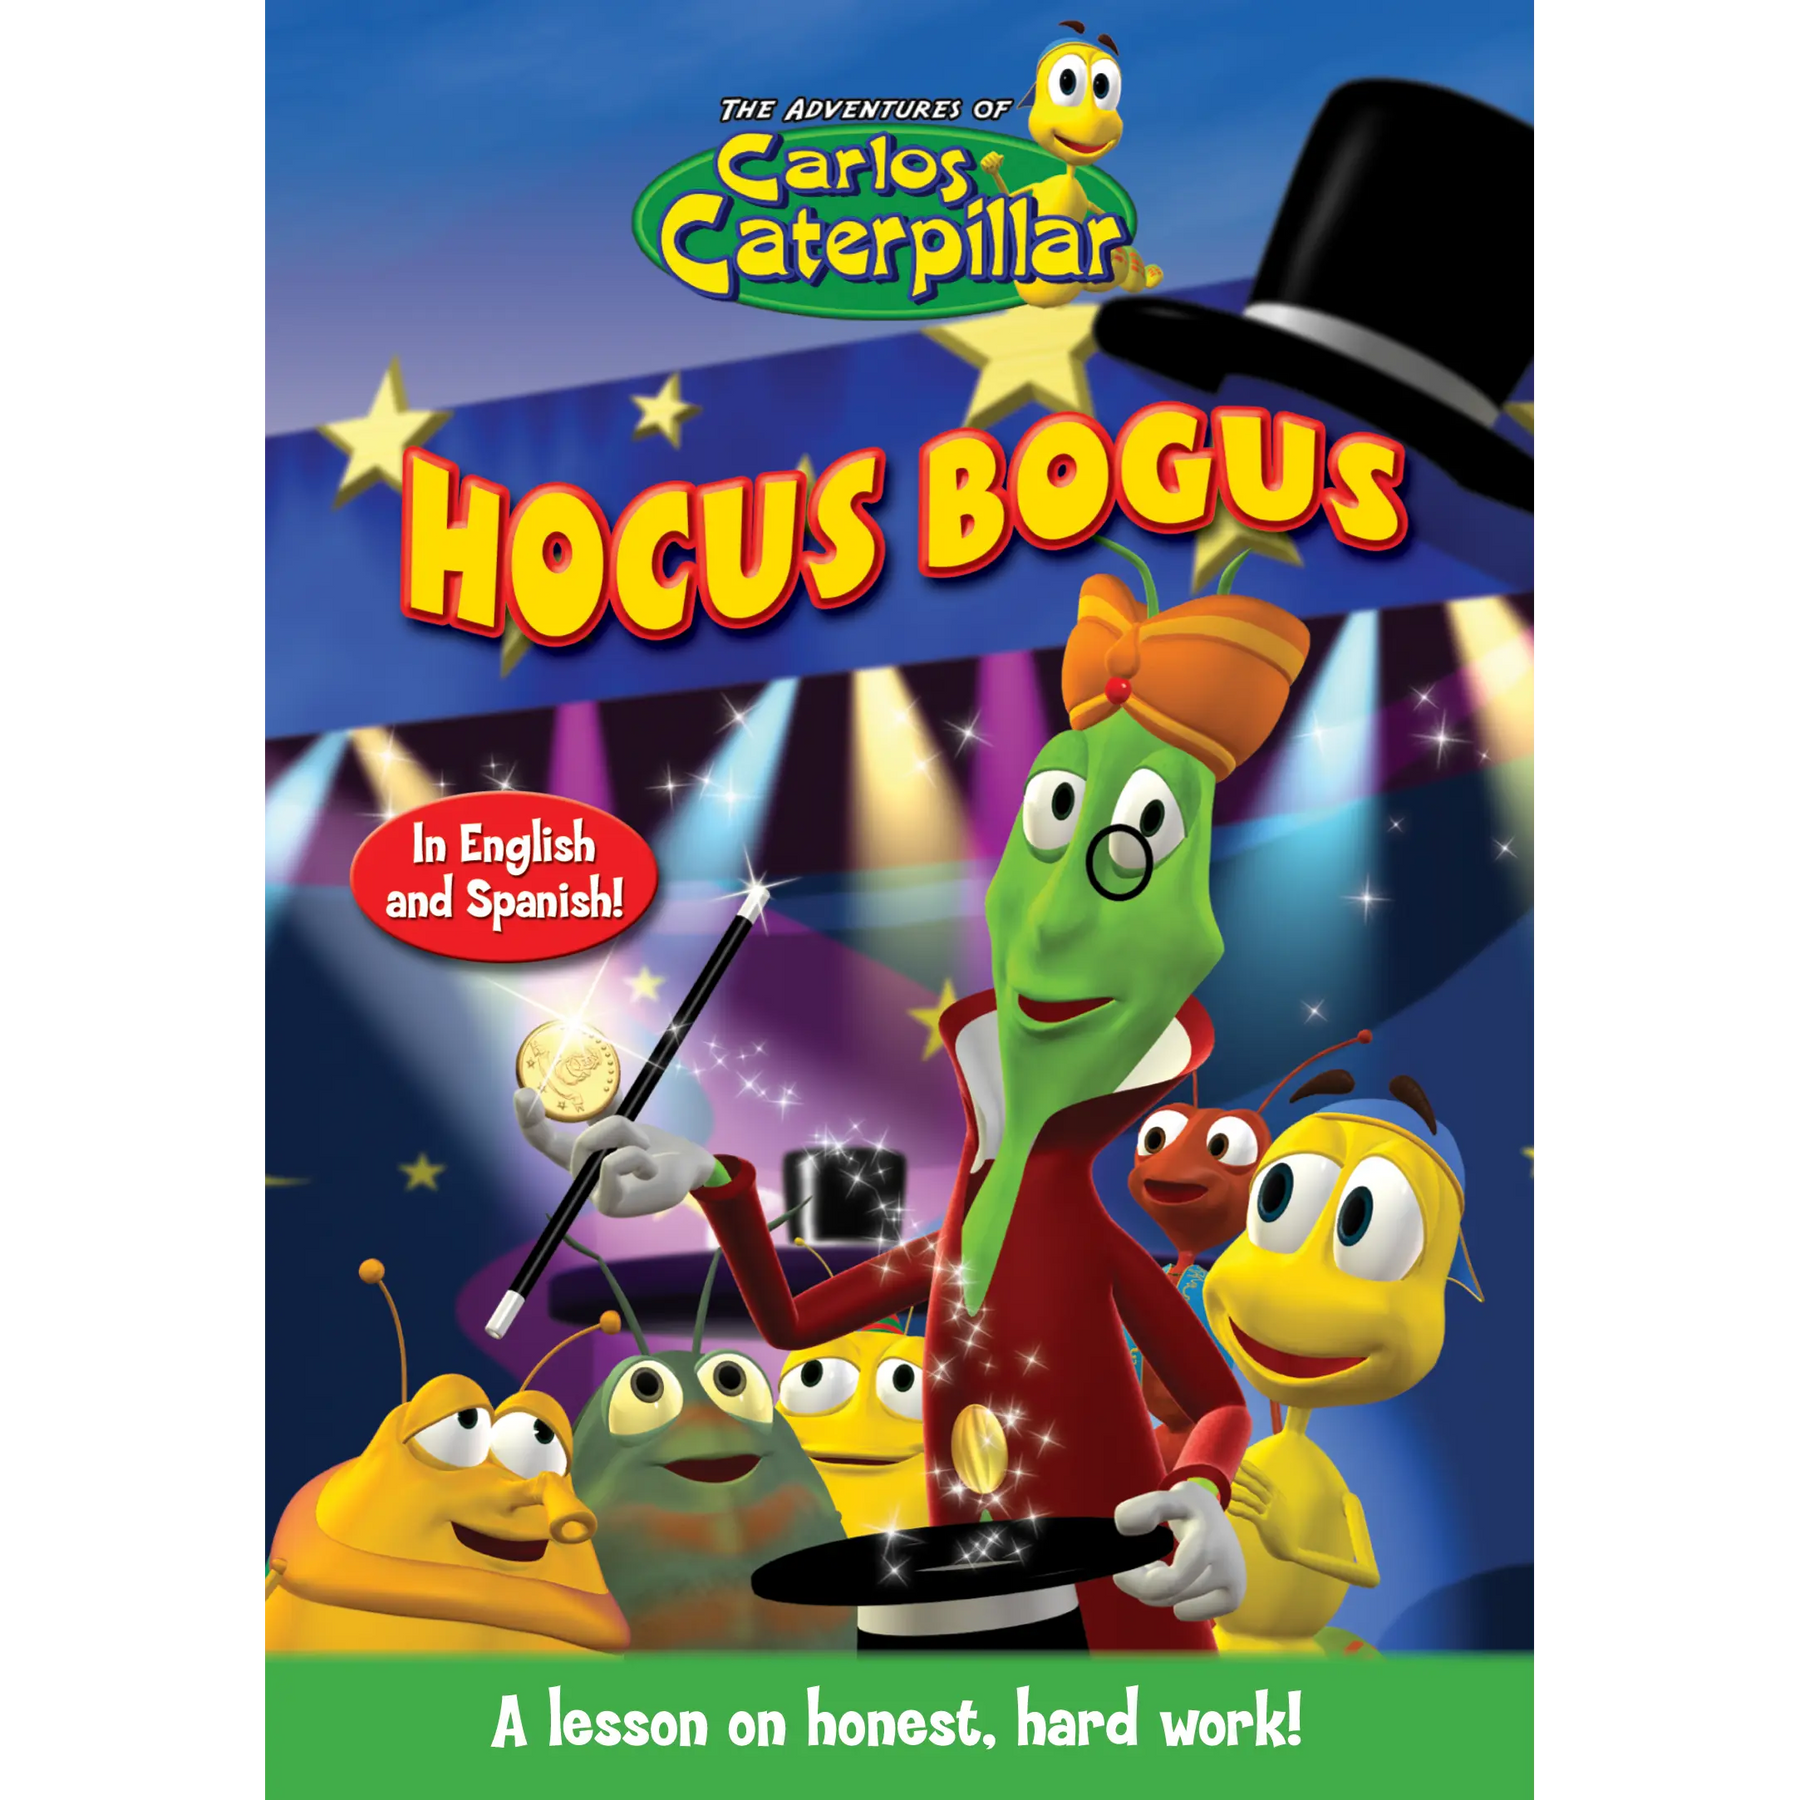 Carlos Caterpillar Episode 12: Hocus Bogus - Video Download